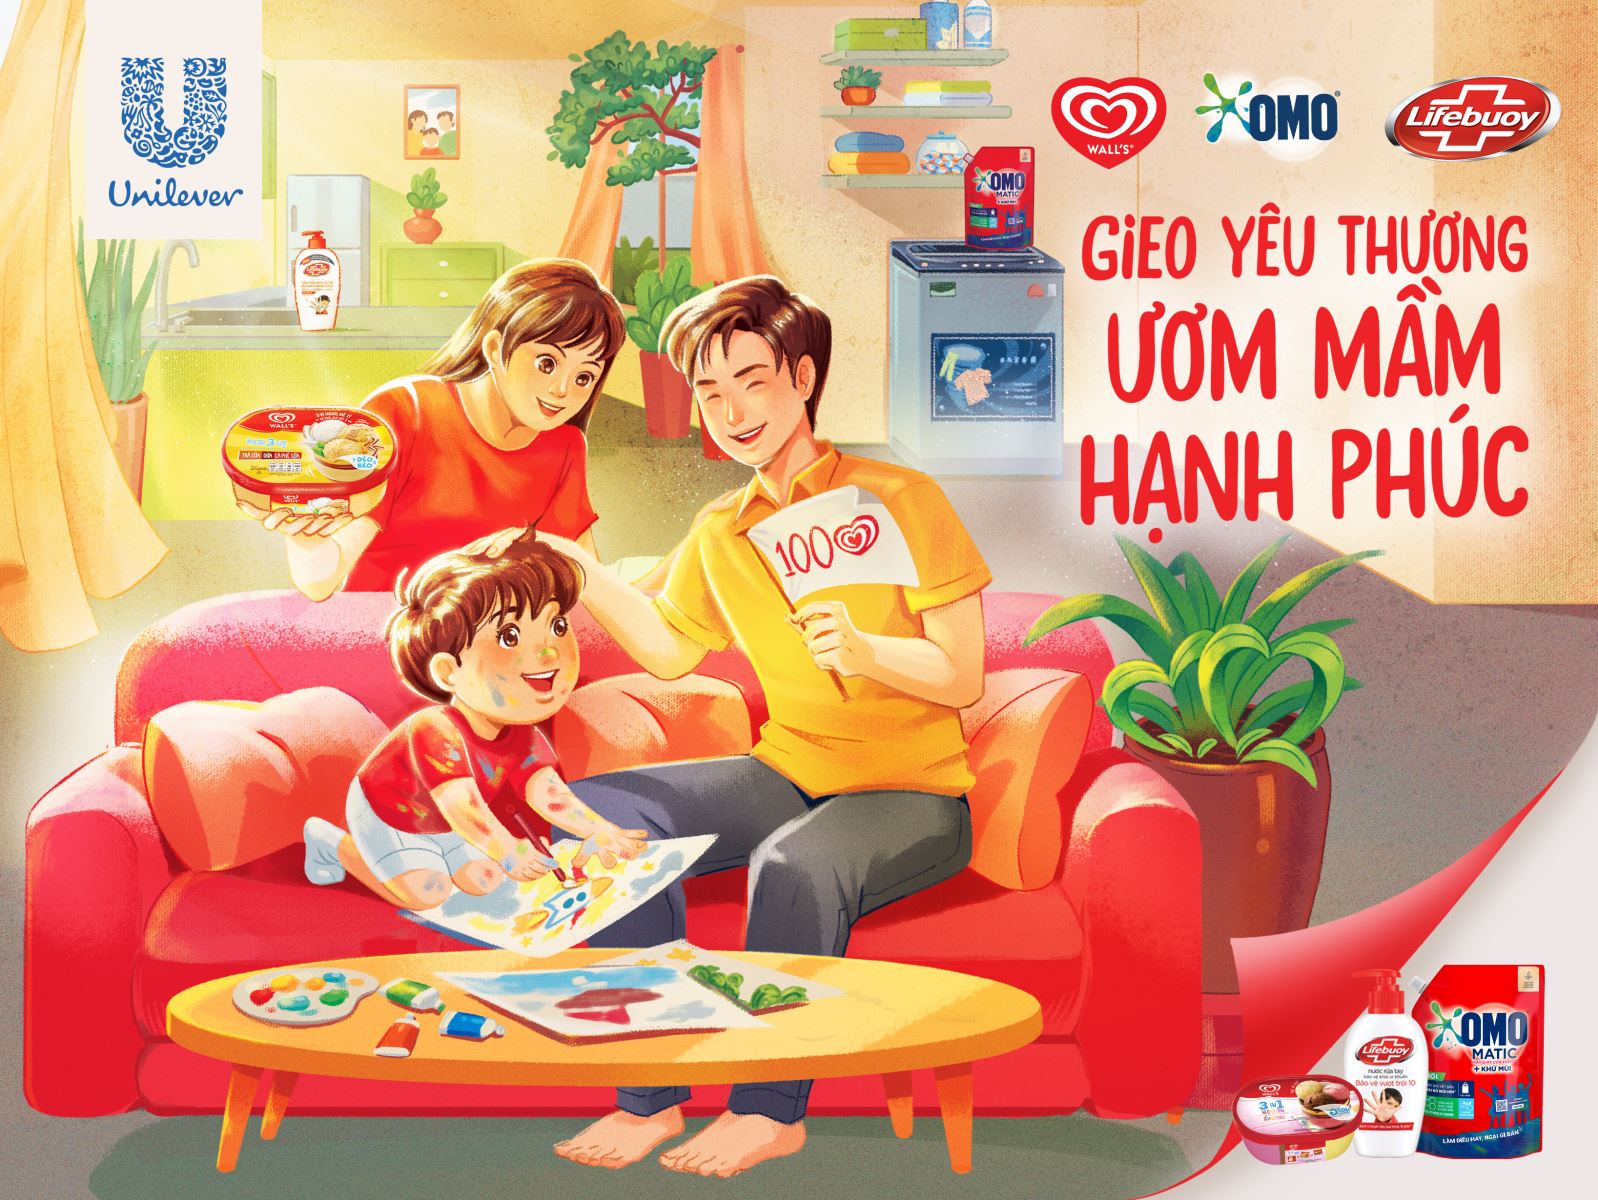 Unilever cùng Hội Bảo vệ quyền trẻ em Việt Nam khởi xướng chiến dịch 'Gieo yêu thương, ươm mầm hạnh phúc'-1